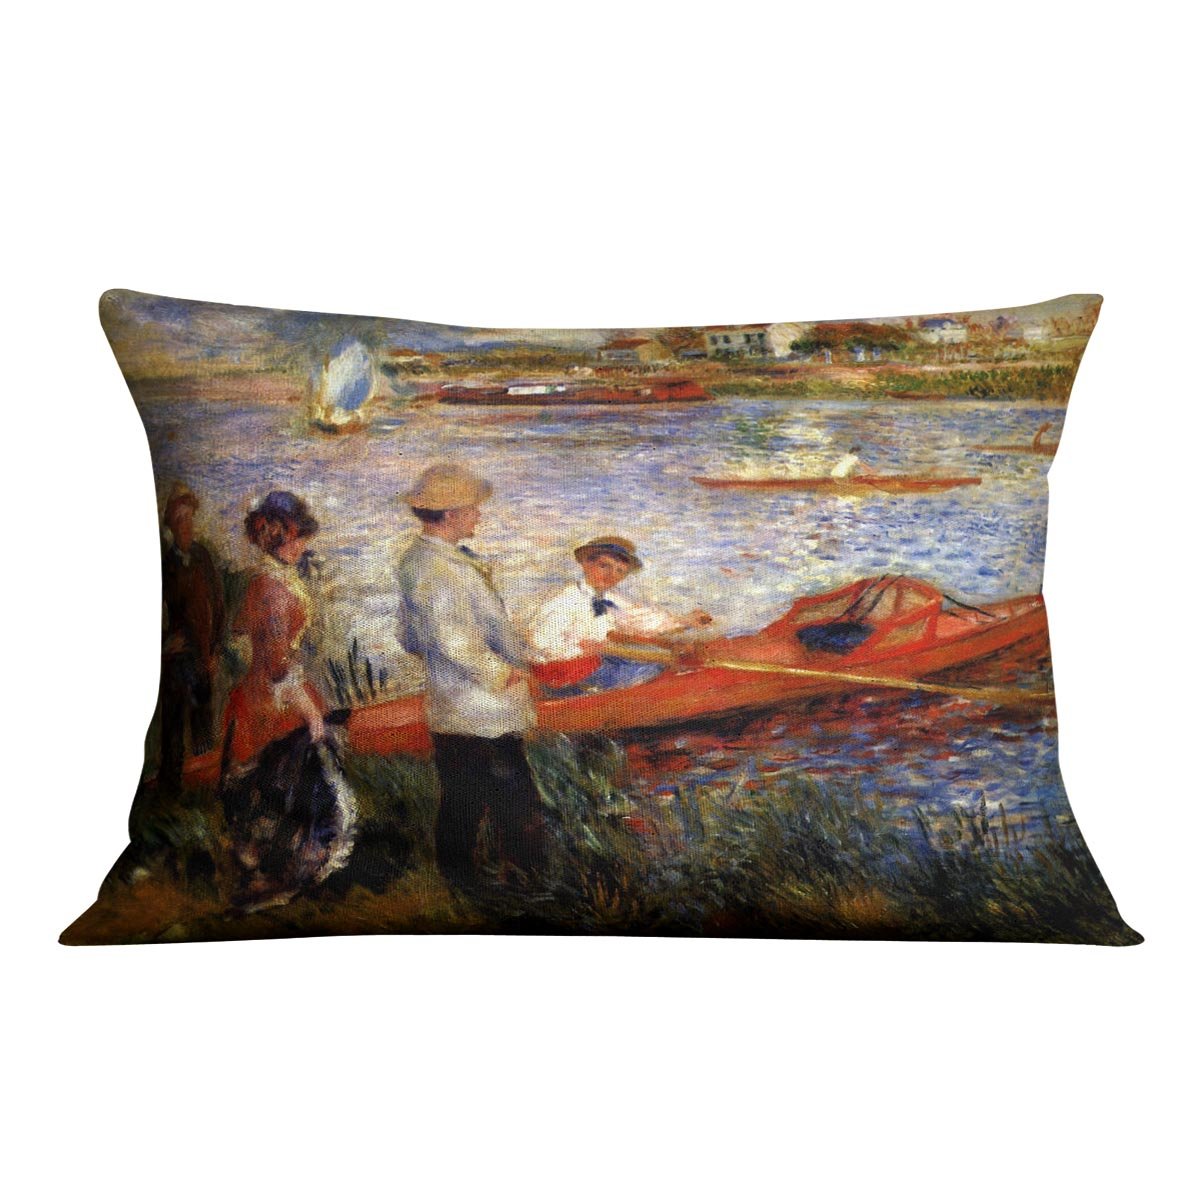 Oarsman of Chatou by Renoir Throw Pillow